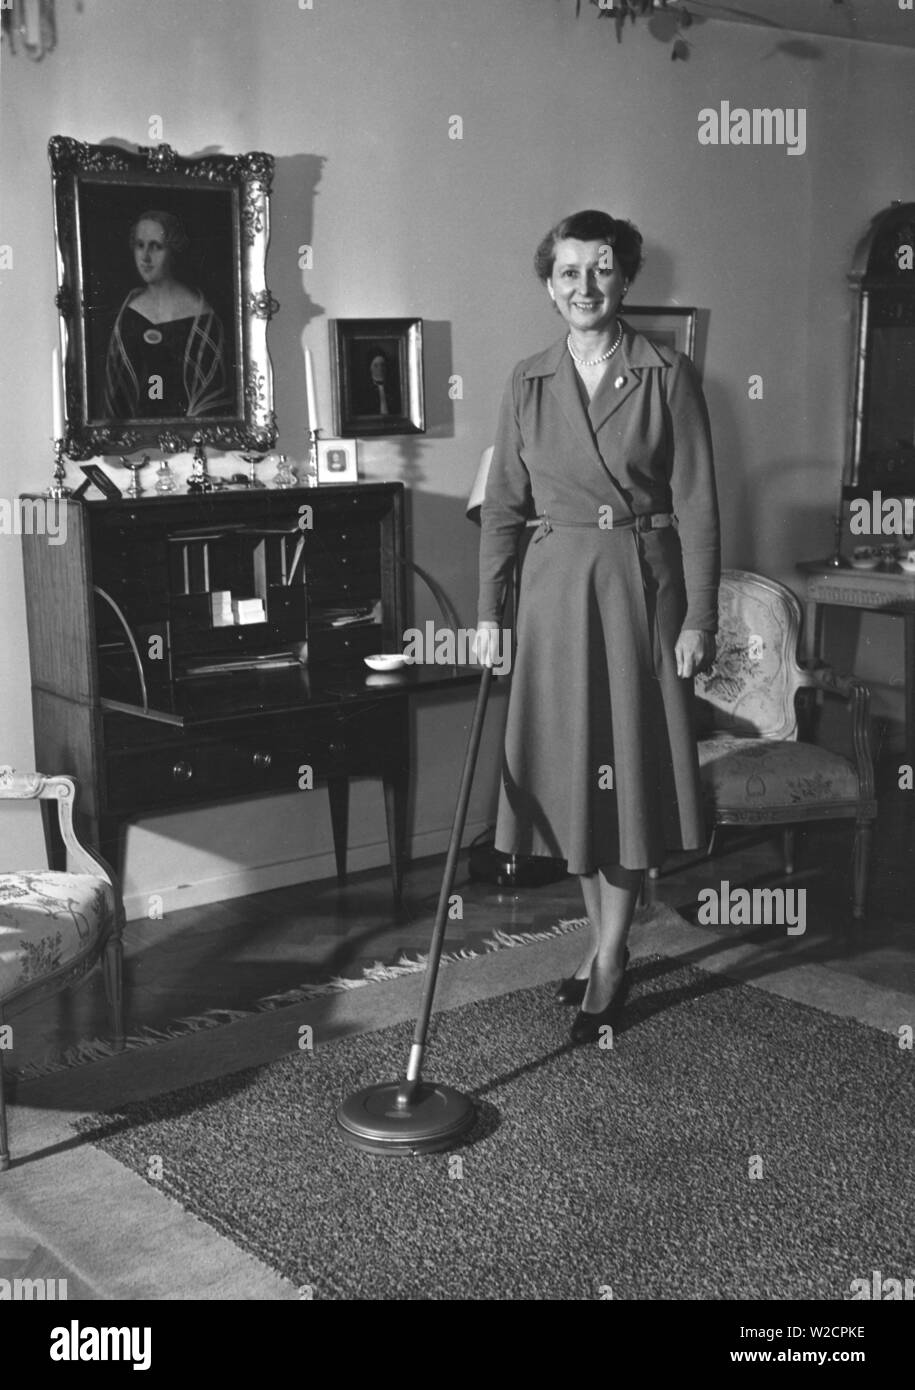 Journée de nettoyage dans les années 1950. Une femme au foyer est la démonstration de la dernière version de l'appareil de nettoyage pour nettoyer les tapis. Suède 1950 Banque D'Images